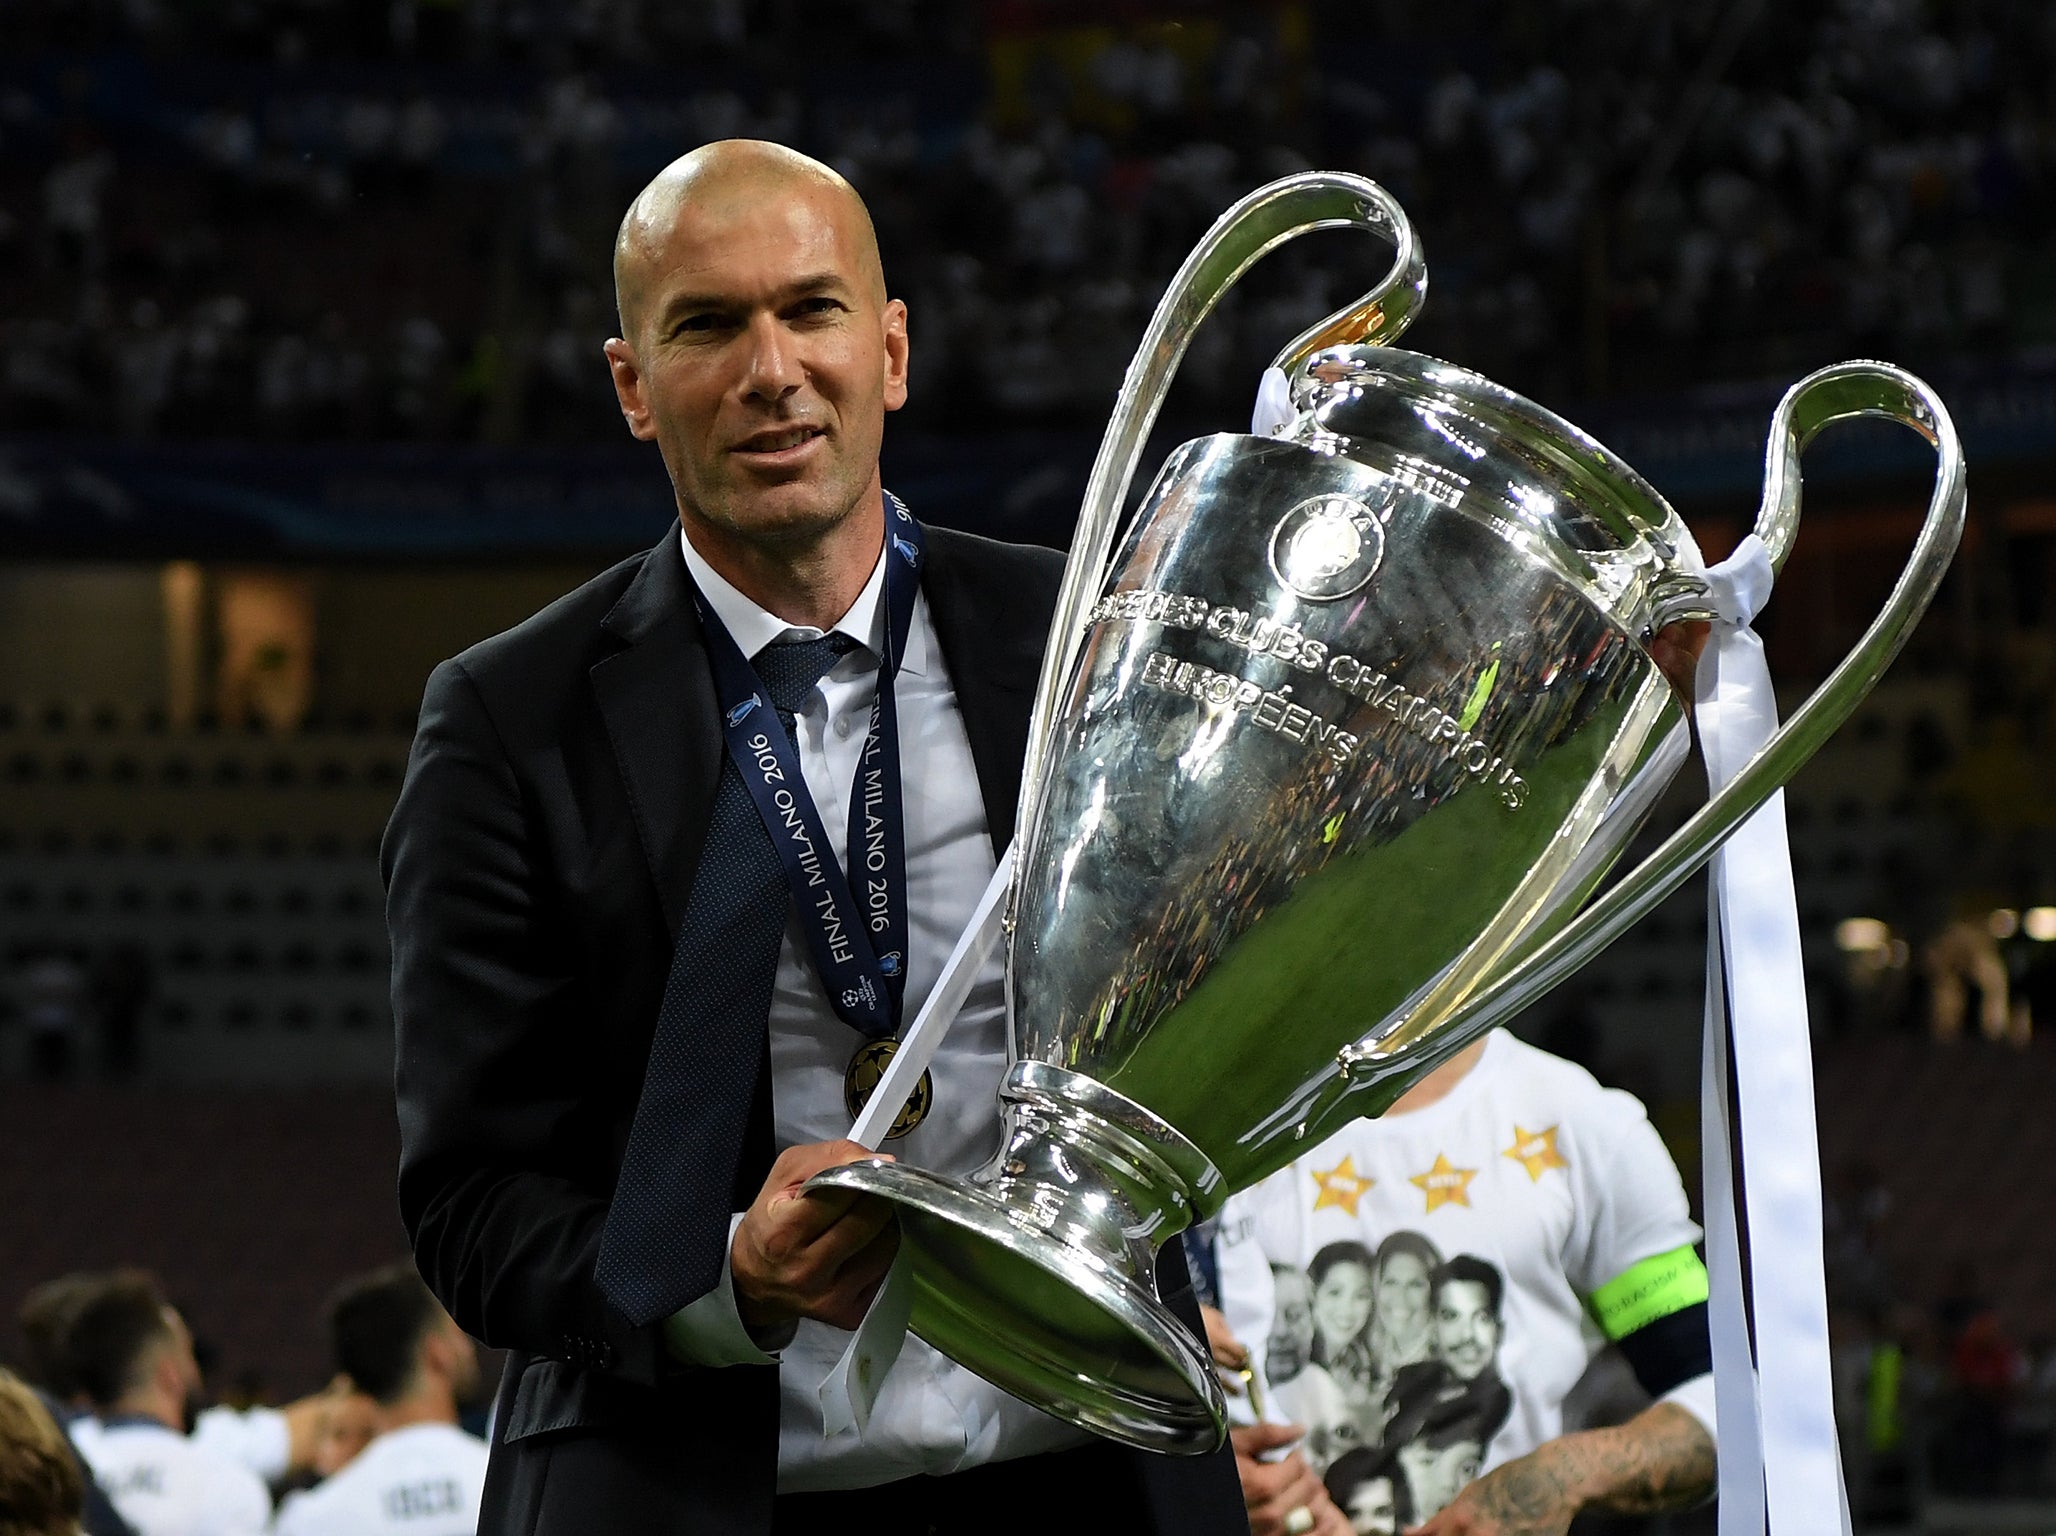 Has Zidane simply been lucky?